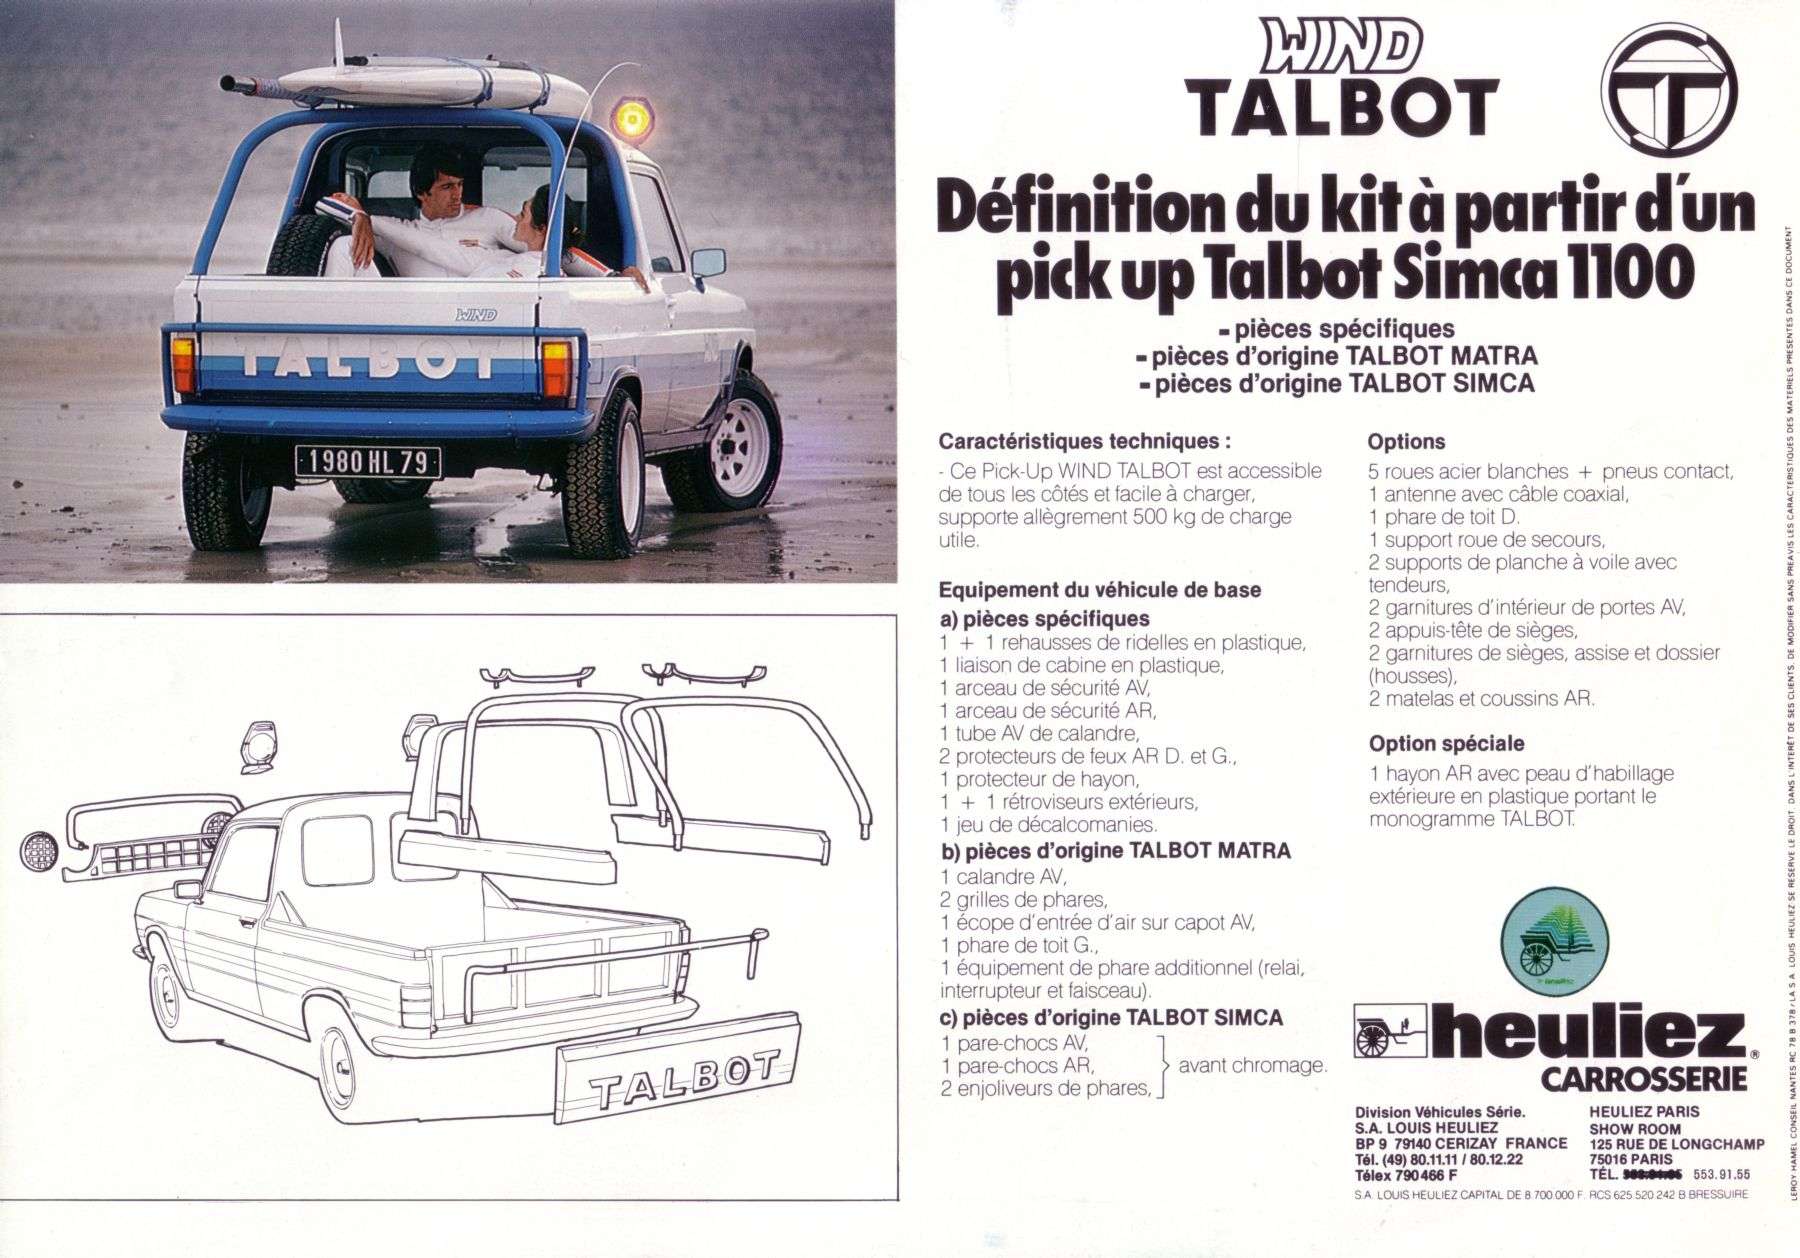 Talbot Wind